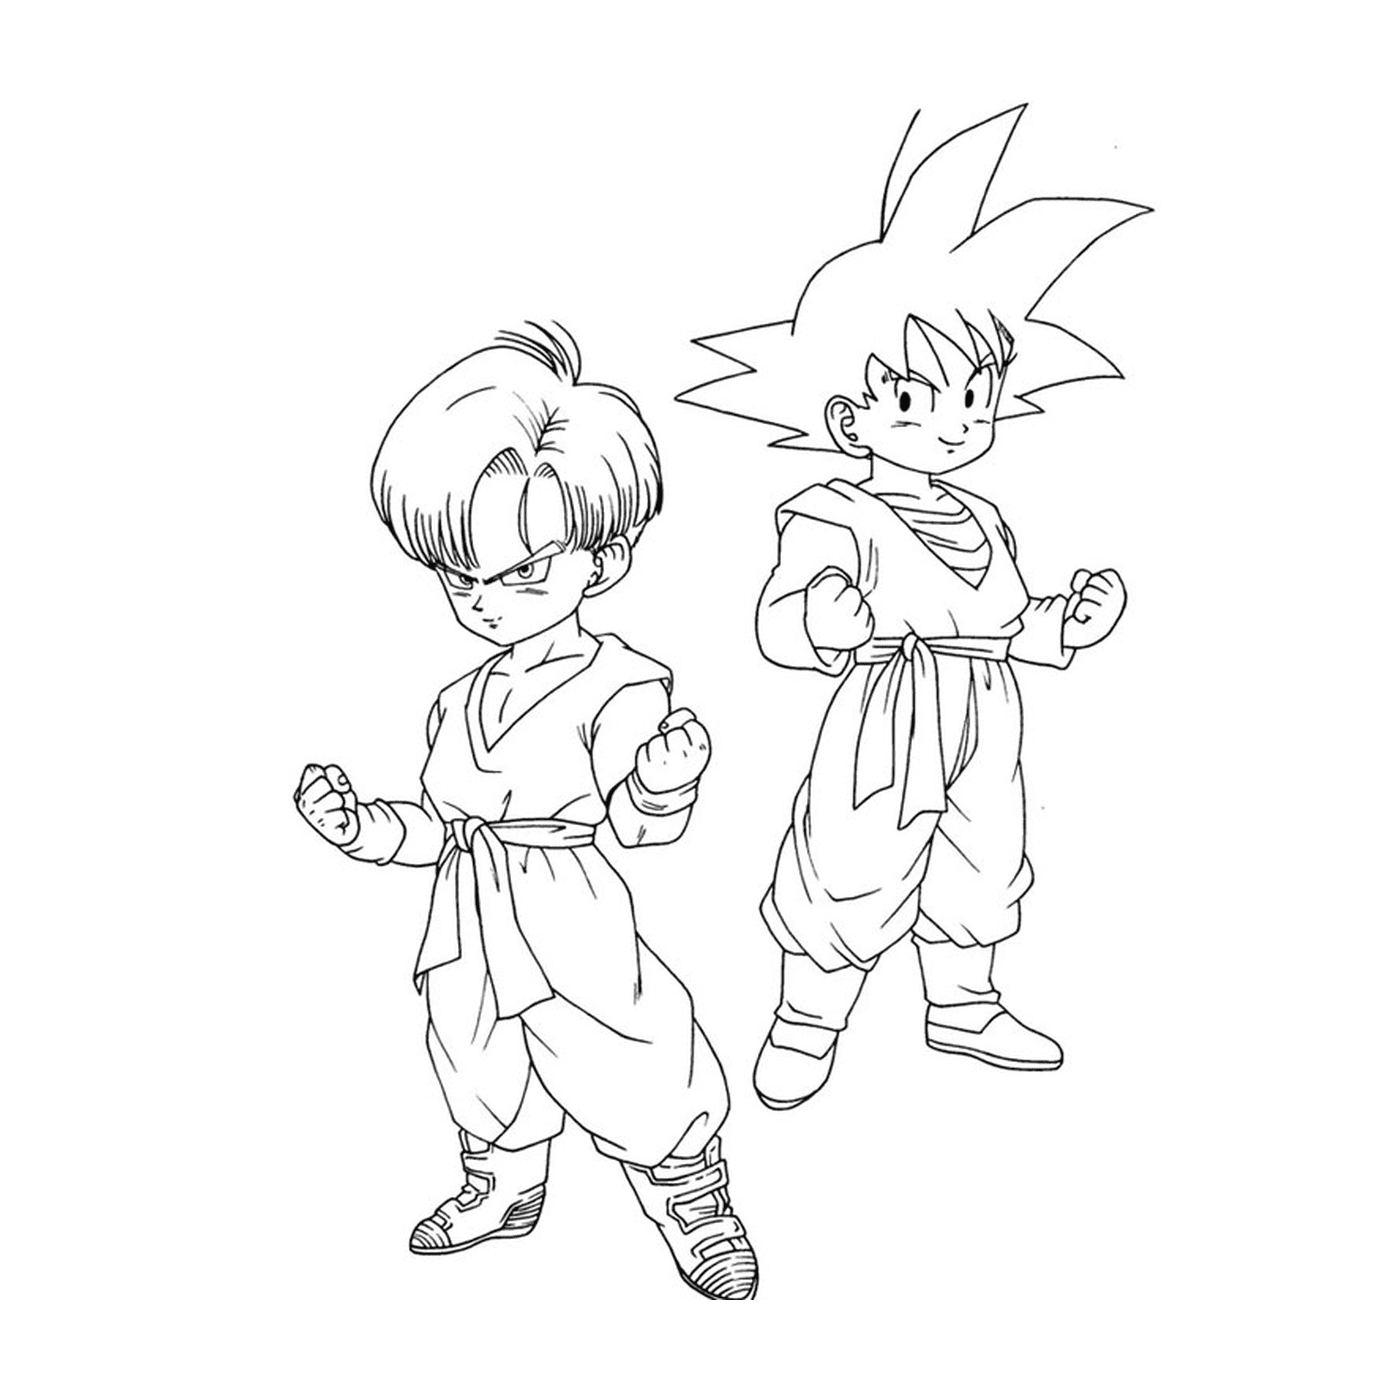  Goku and Gohan child of Dragon Ball Z 